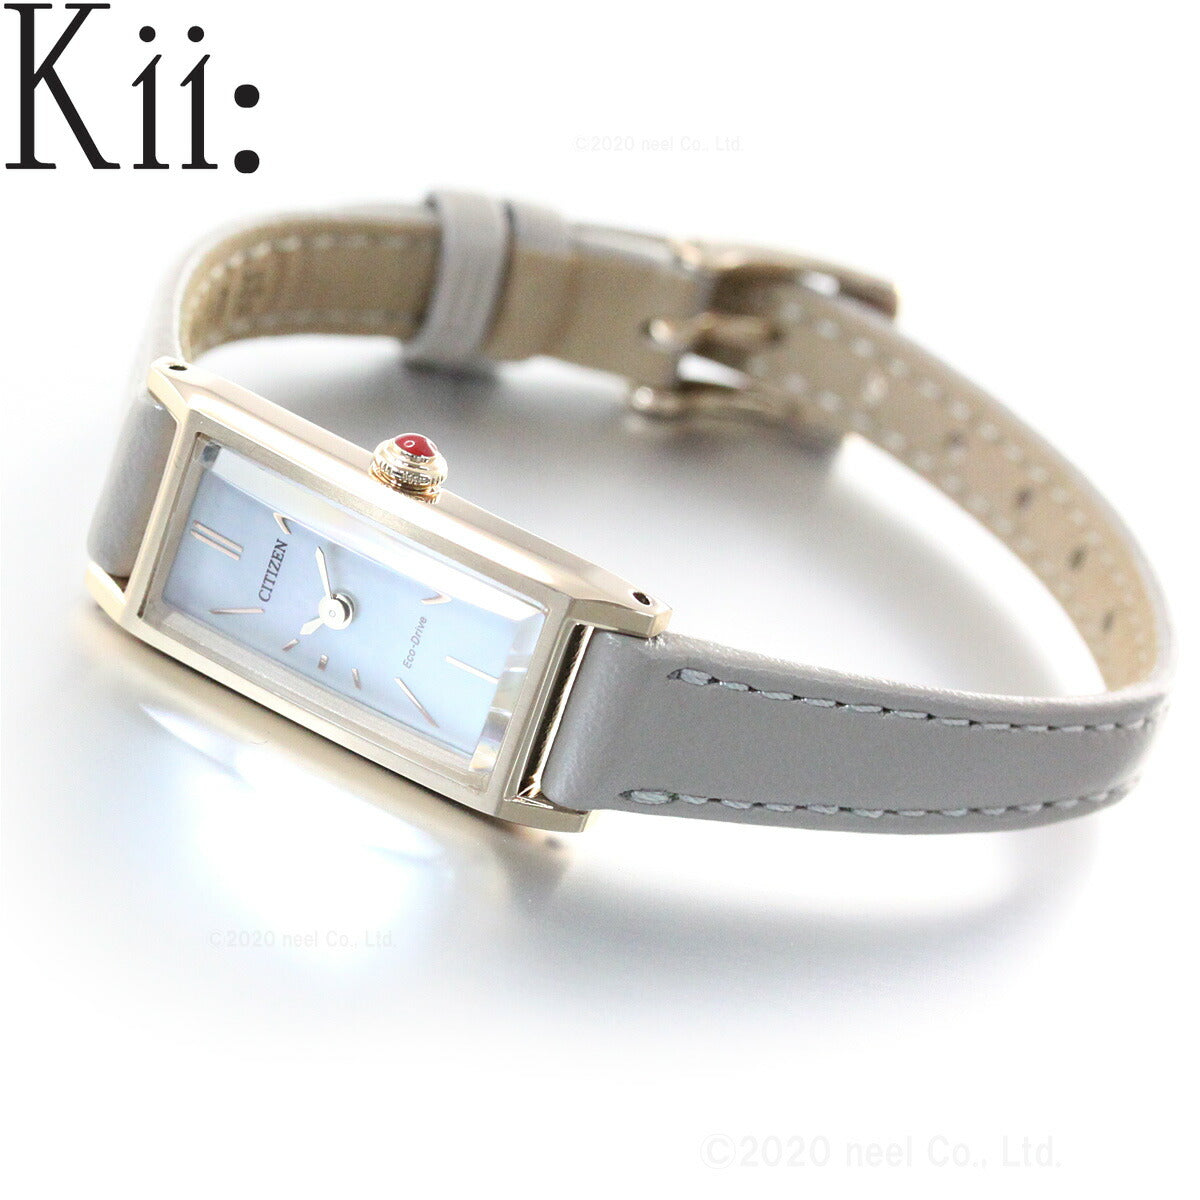 [シチズン]キー Kii: エコドライブ ネット流通限定モデル 腕時計 レディー